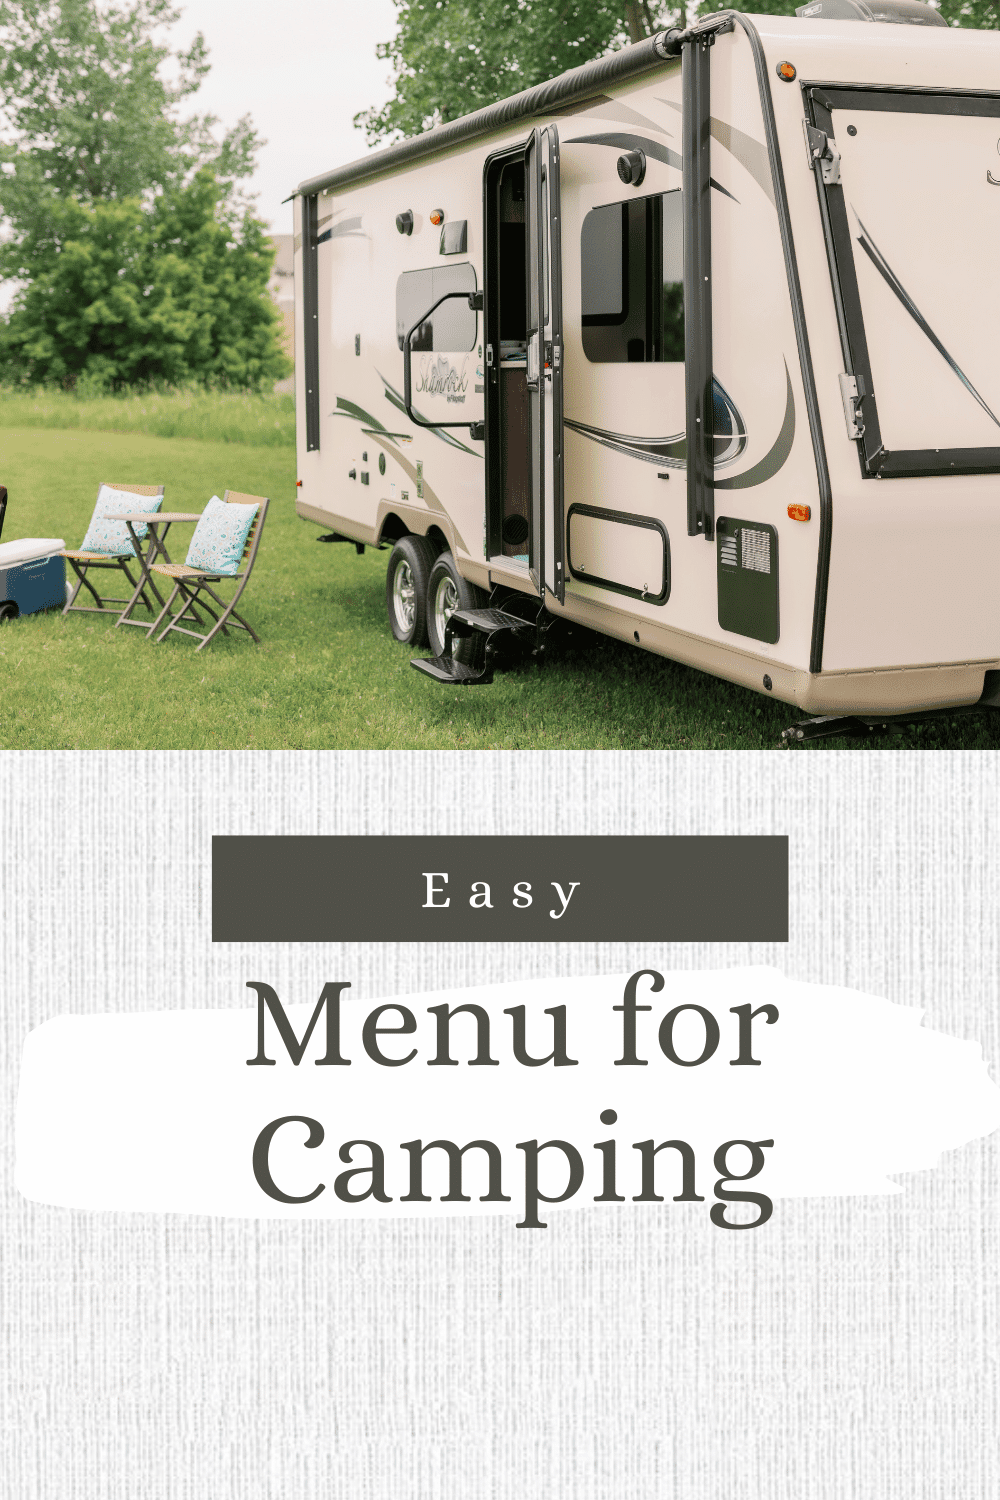 Easy menu for camping